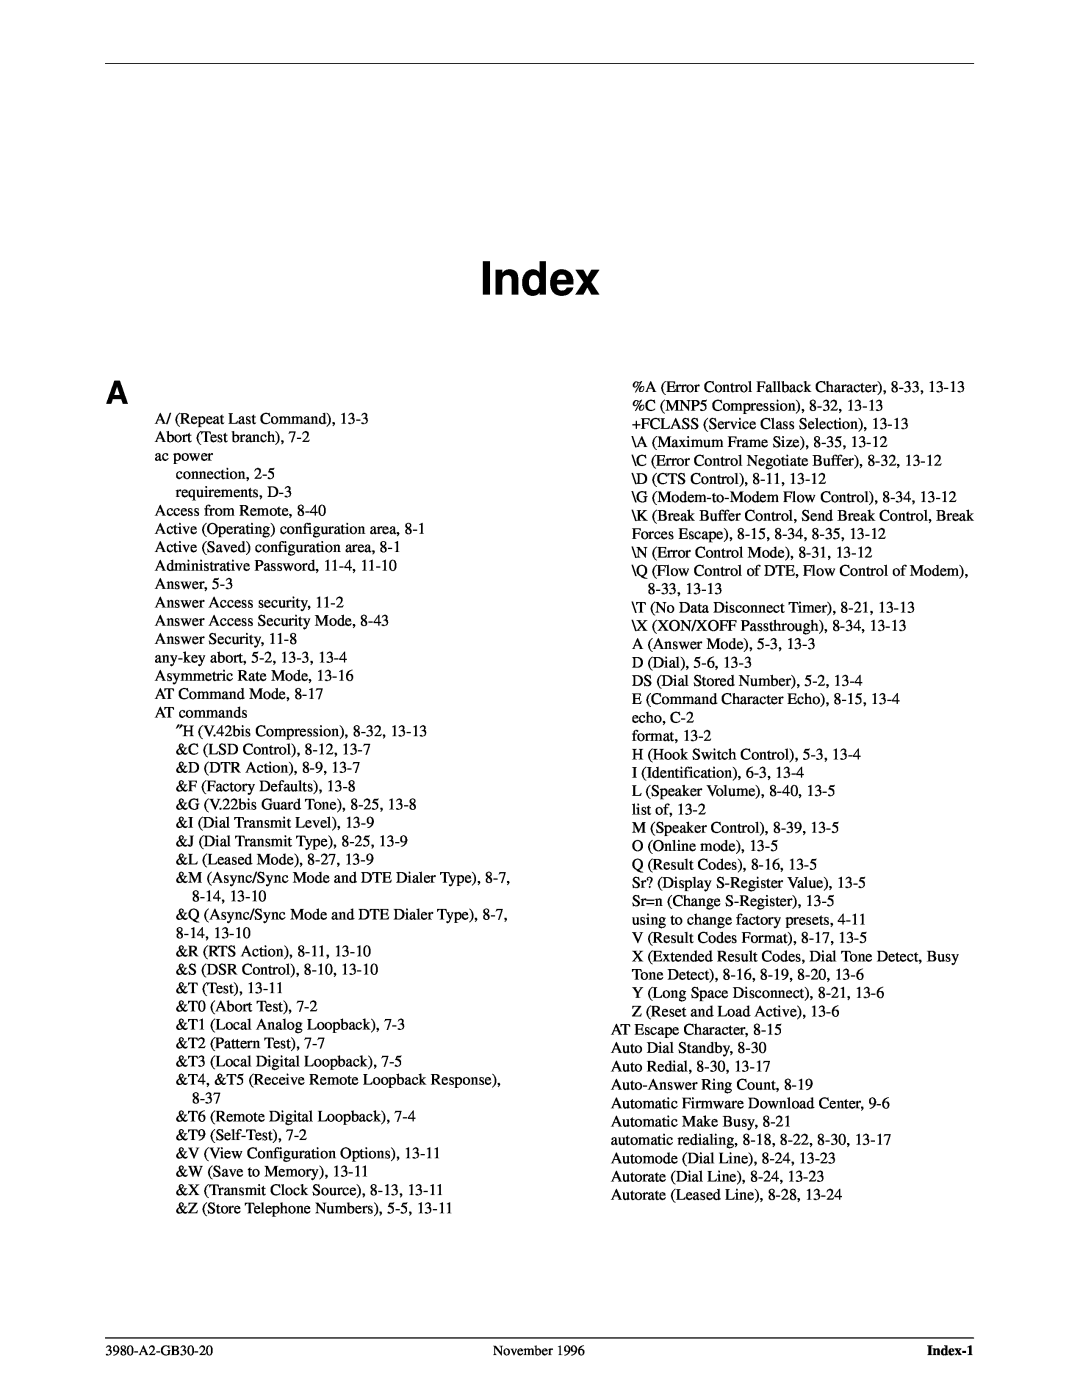 Paradyne 3800PLUS manual Index 